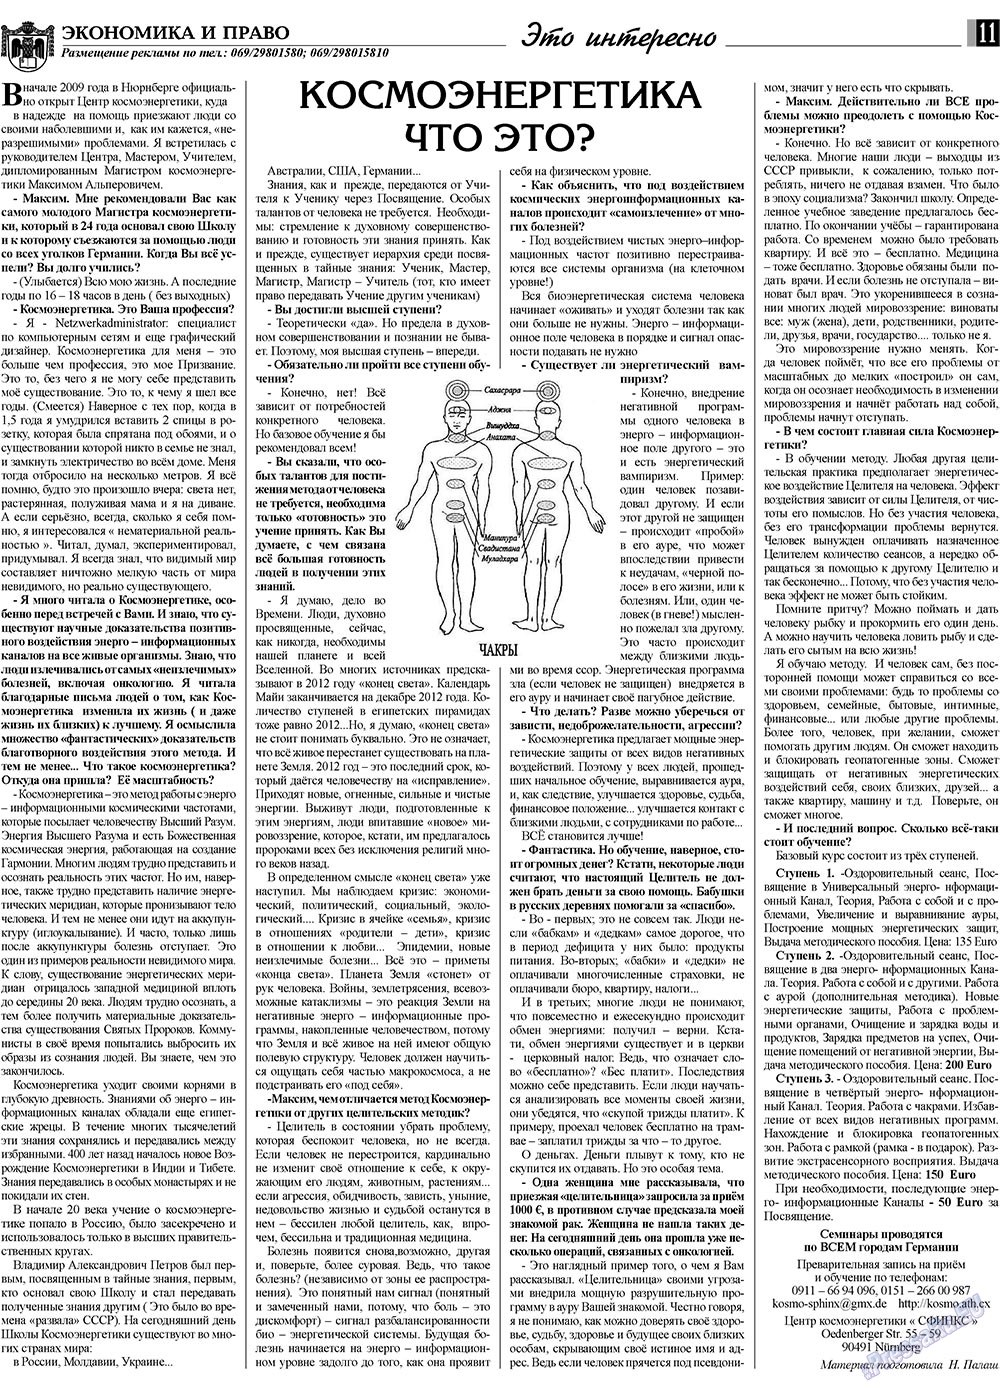 Экономика и право, газета. 2009 №9 стр.11